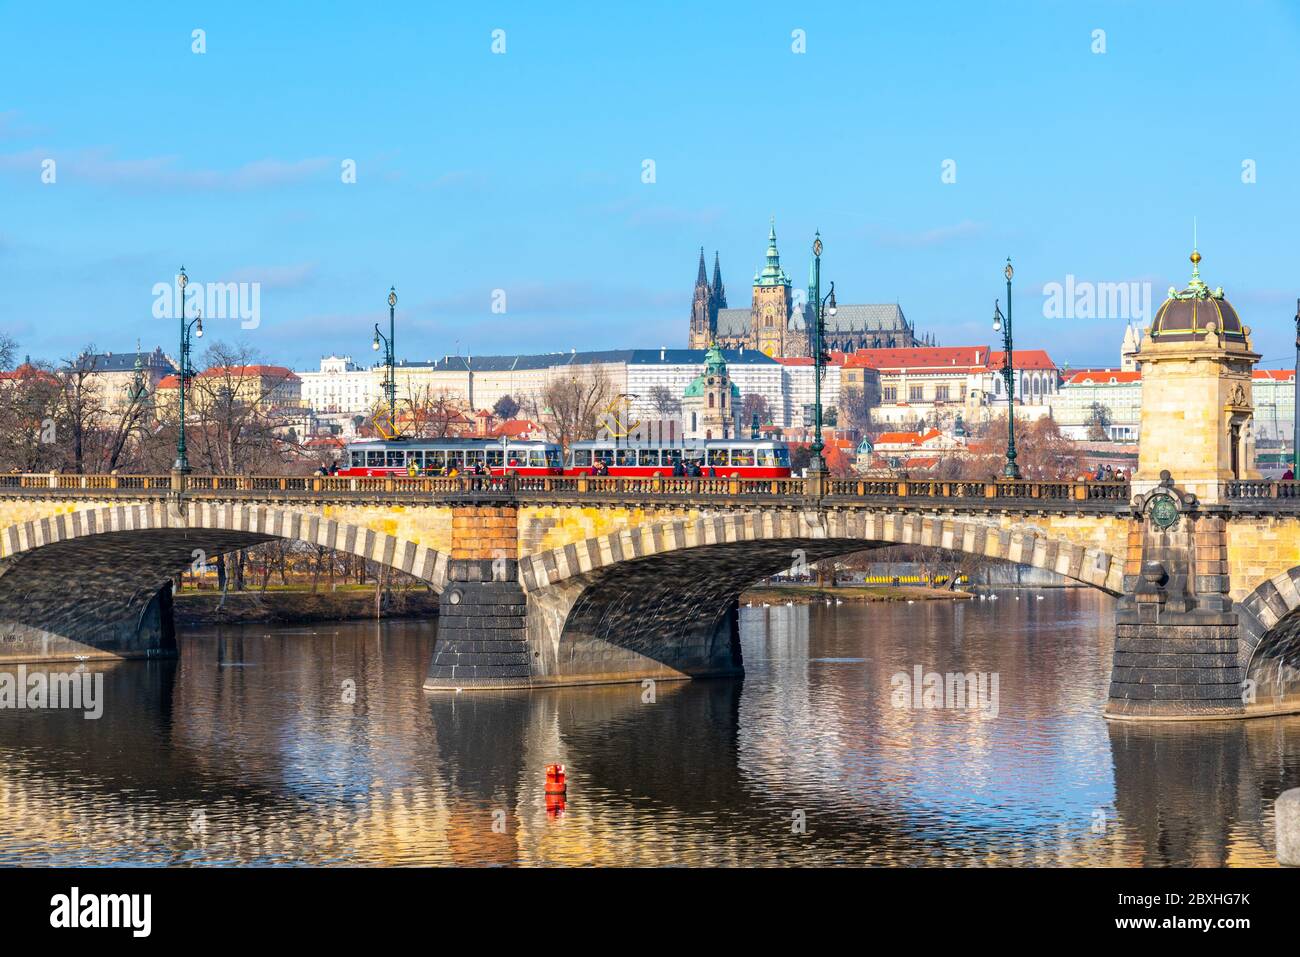 Legion Bridge, ceco: La maggior parte dei Legii, riflessa nel fiume Moldava con il Castello di Praga sullo sfondo. Giornata invernale limpida e soleggiata a Praga, Repubblica Ceca. Foto Stock